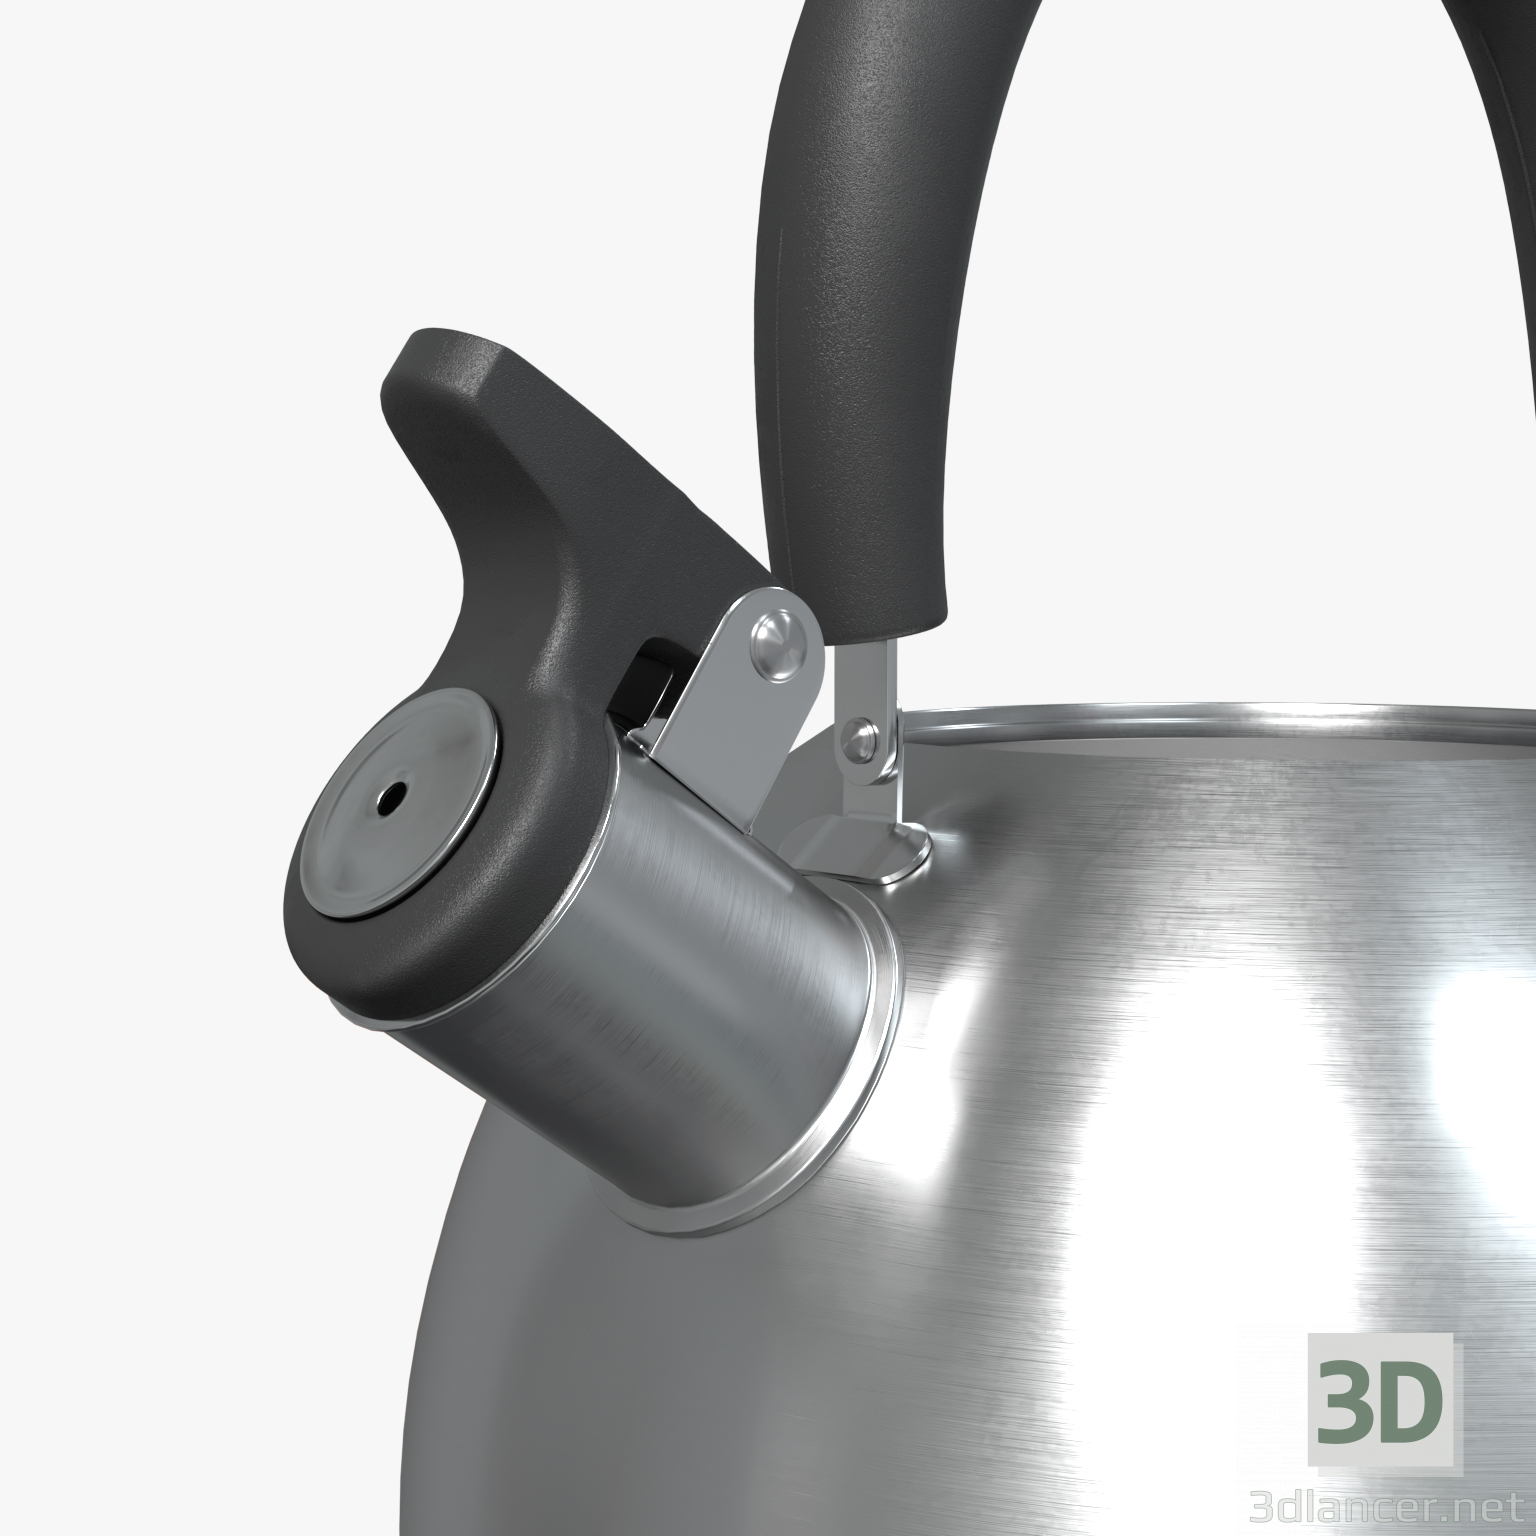 3d Whistle kettle model buy - render